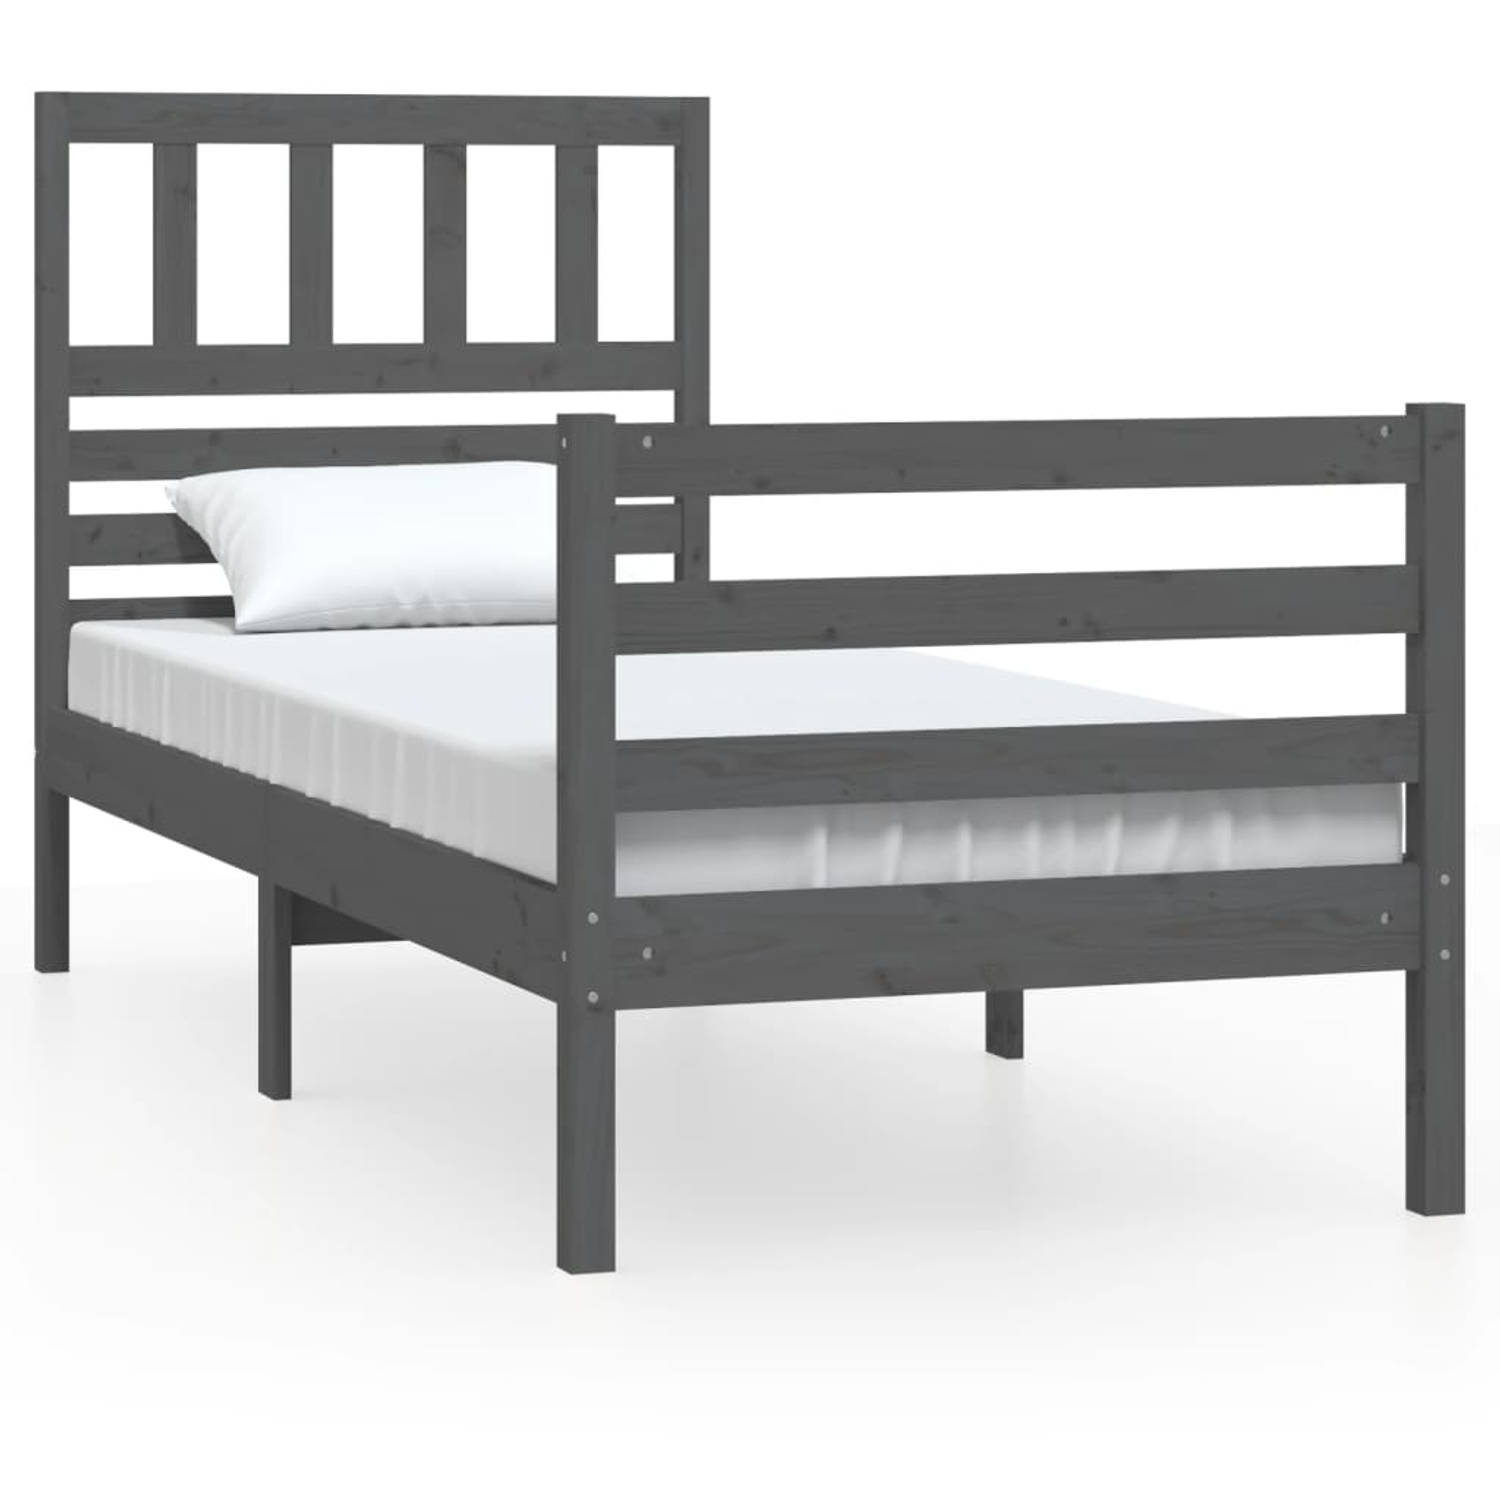 The Living Store Bedframe massief hout grijs 90x200 cm - Bedframe - Bedframes - Eenpersoonsbed - Bed - Bedombouw - Frame - Bed Frame - Ledikant - Bedframe Met Hoofdeinde - Eenperso